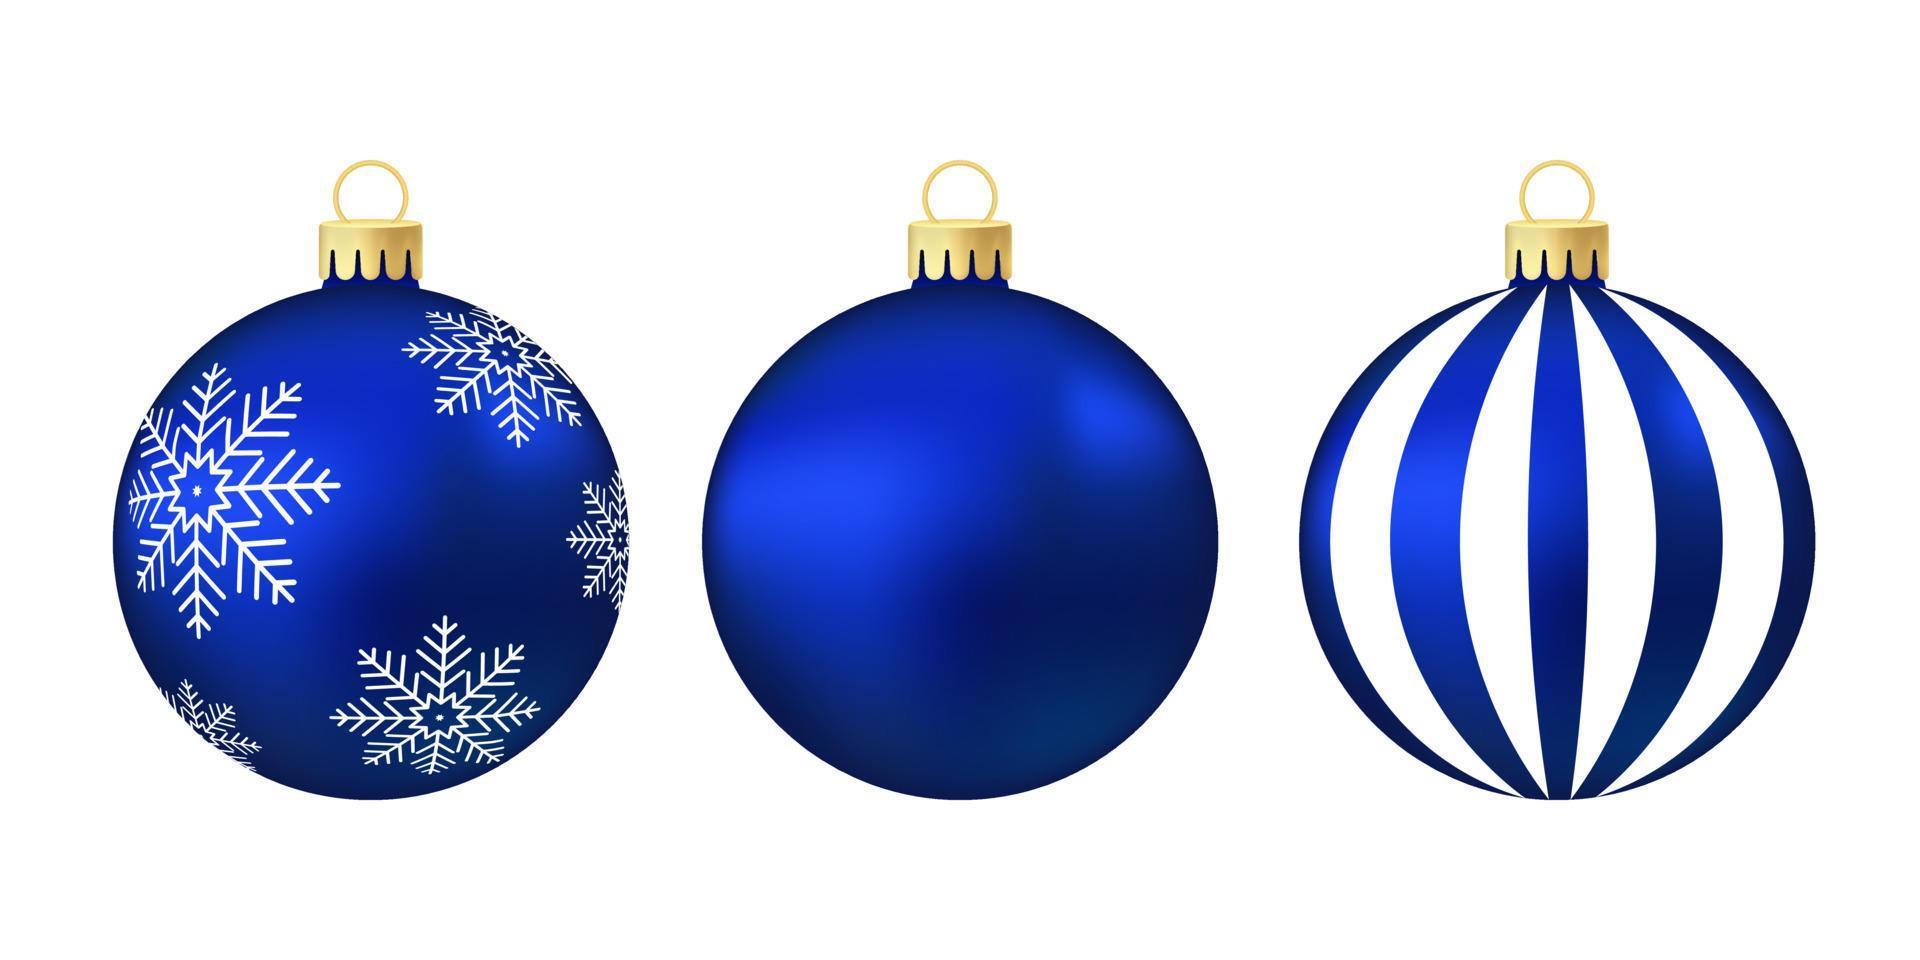 blaues weihnachtsbaumspielzeug oder ball volumetrische und realistische farbabbildung vektor